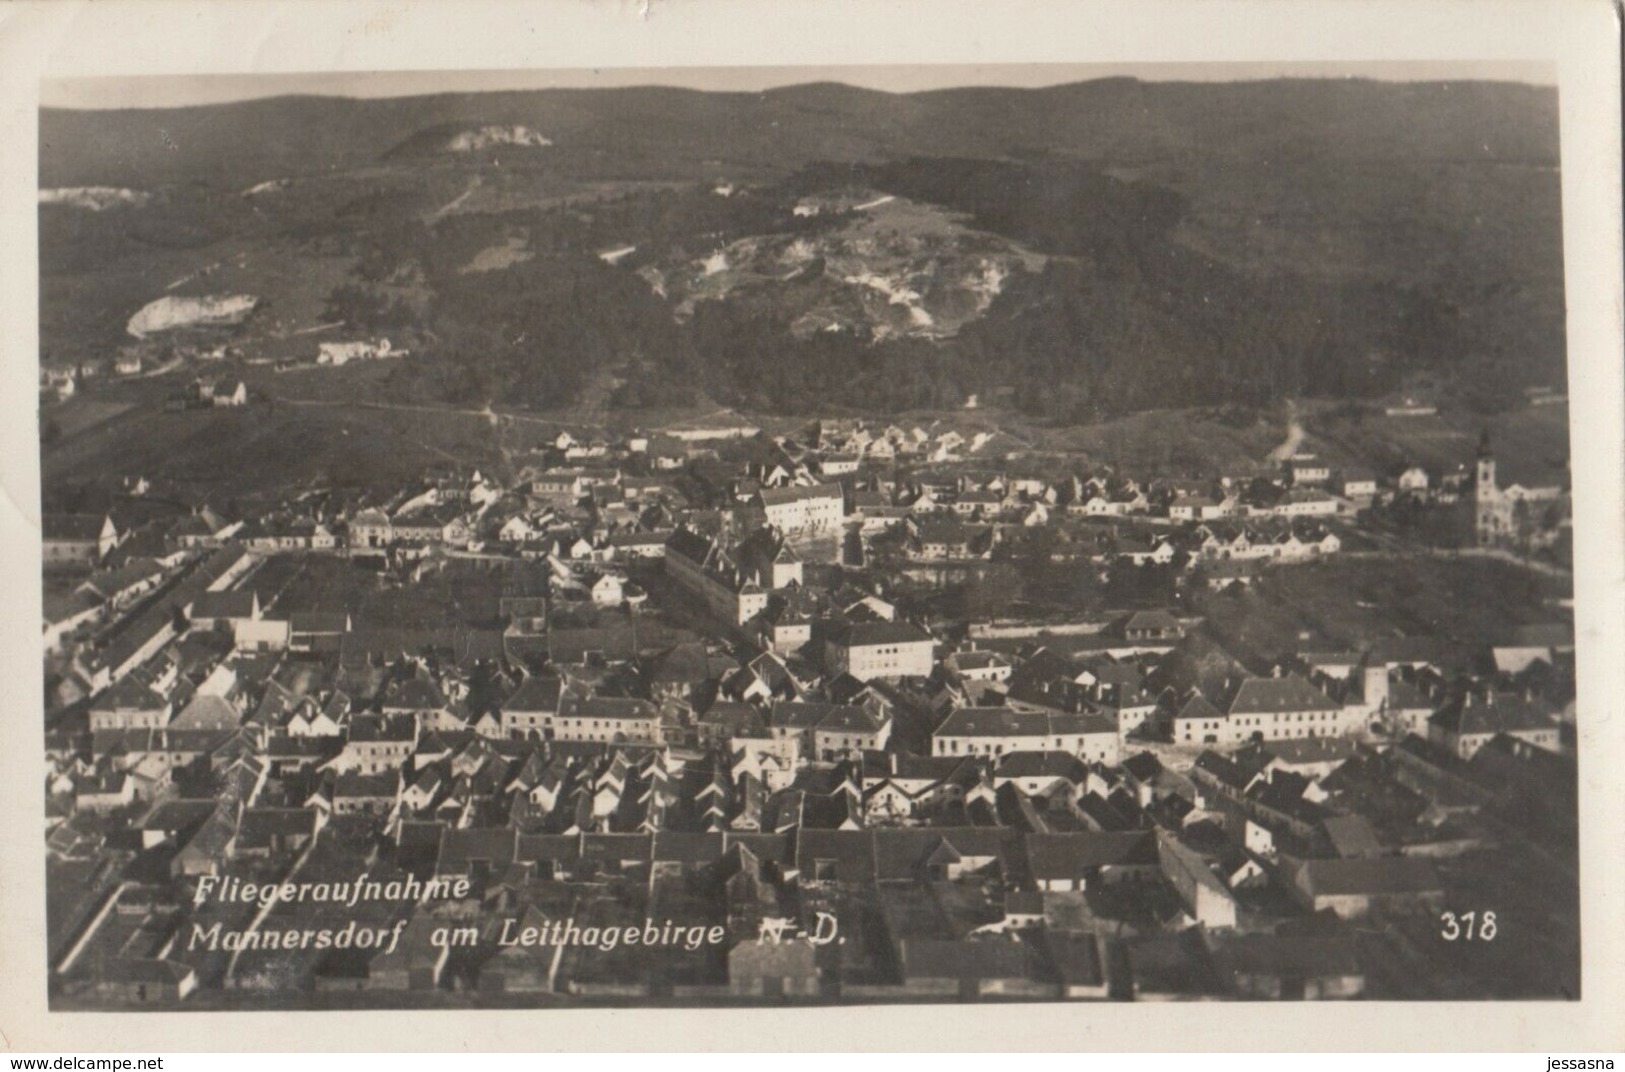 AK - MANNERSDORF Am Leithagebirge - Fliegeraufnahme 1941 - Bruck An Der Leitha